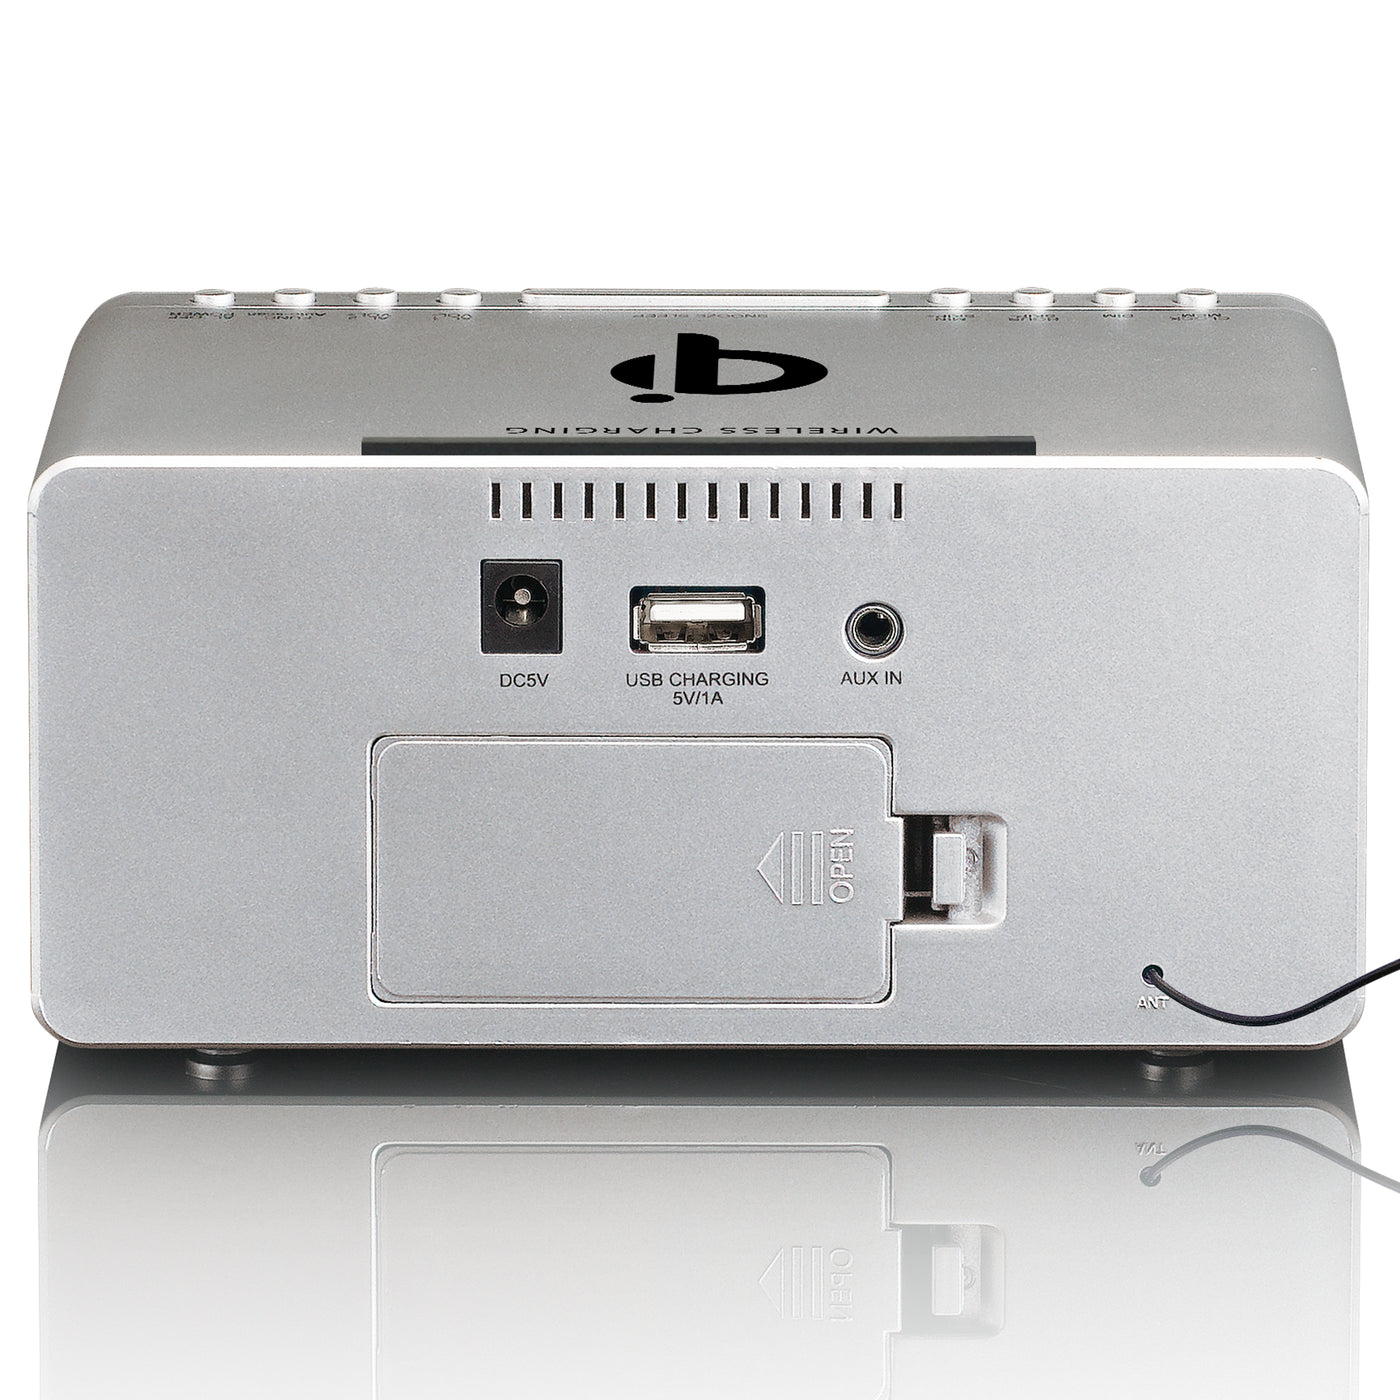 LENCO CR-550SI - Radiobudzik stereofoniczny FM z USB i bezprzewodowym ładowaniem smartfona Qi - Srebrny